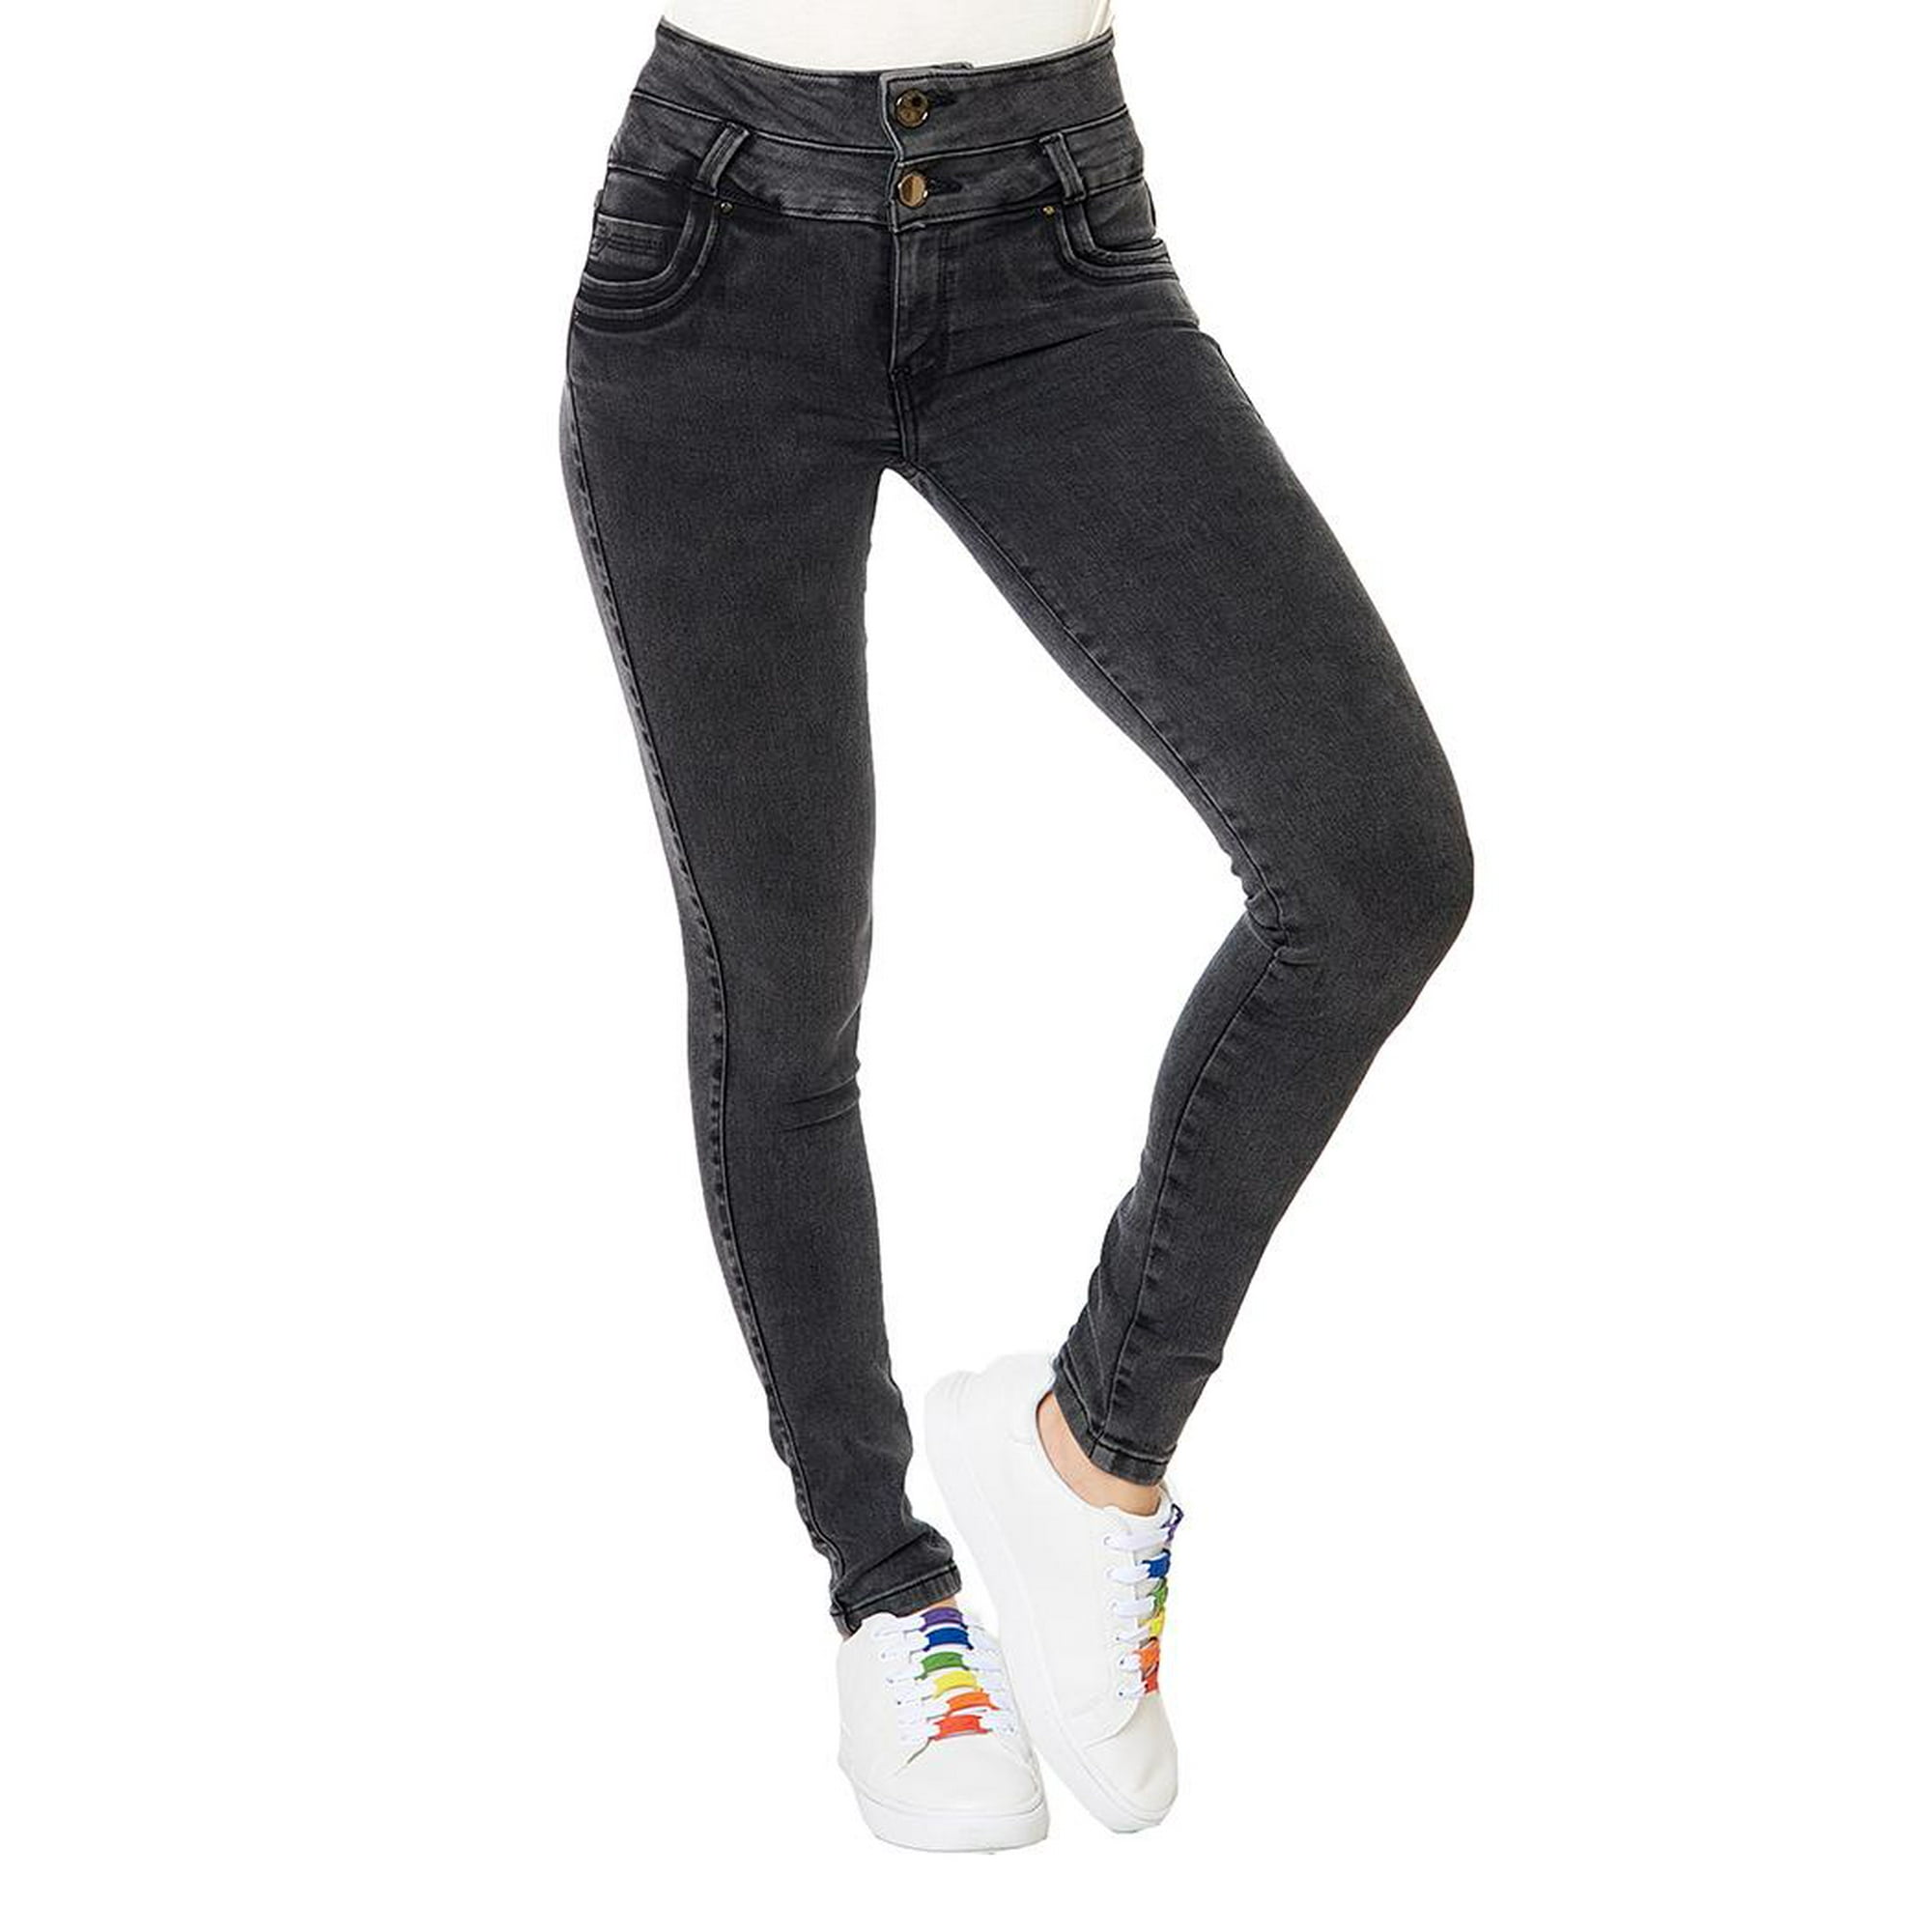 Pantalón Dama Mujer Jeans Básico Skinny Negro Casual Comodo negro 5  Incógnita 110050